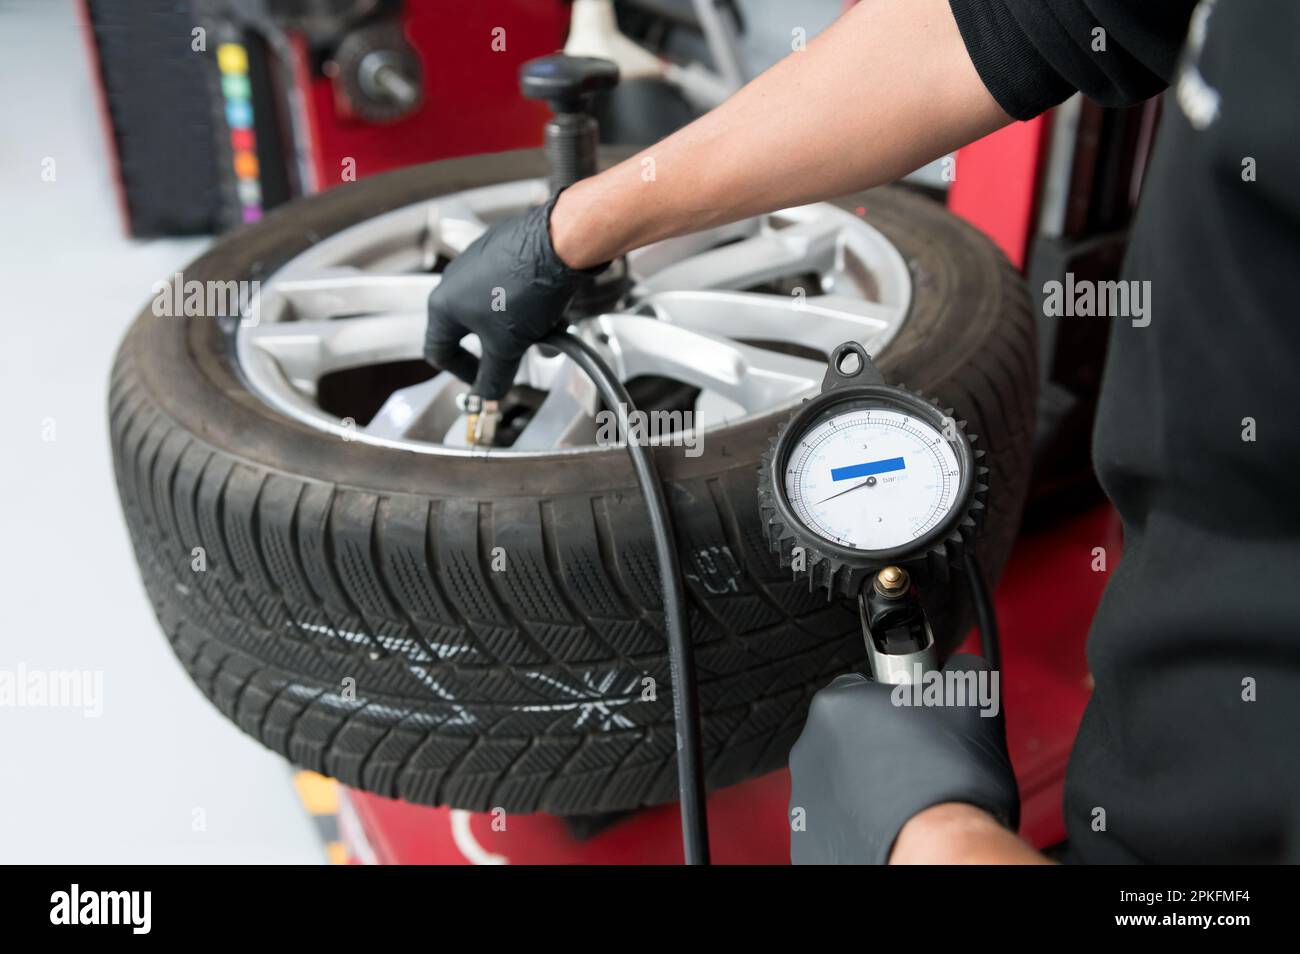 Un ouvrier agricole de service de garage pompant un pneu automobile équilibré à l'aide d'un manomètre dans un atelier automobile Banque D'Images